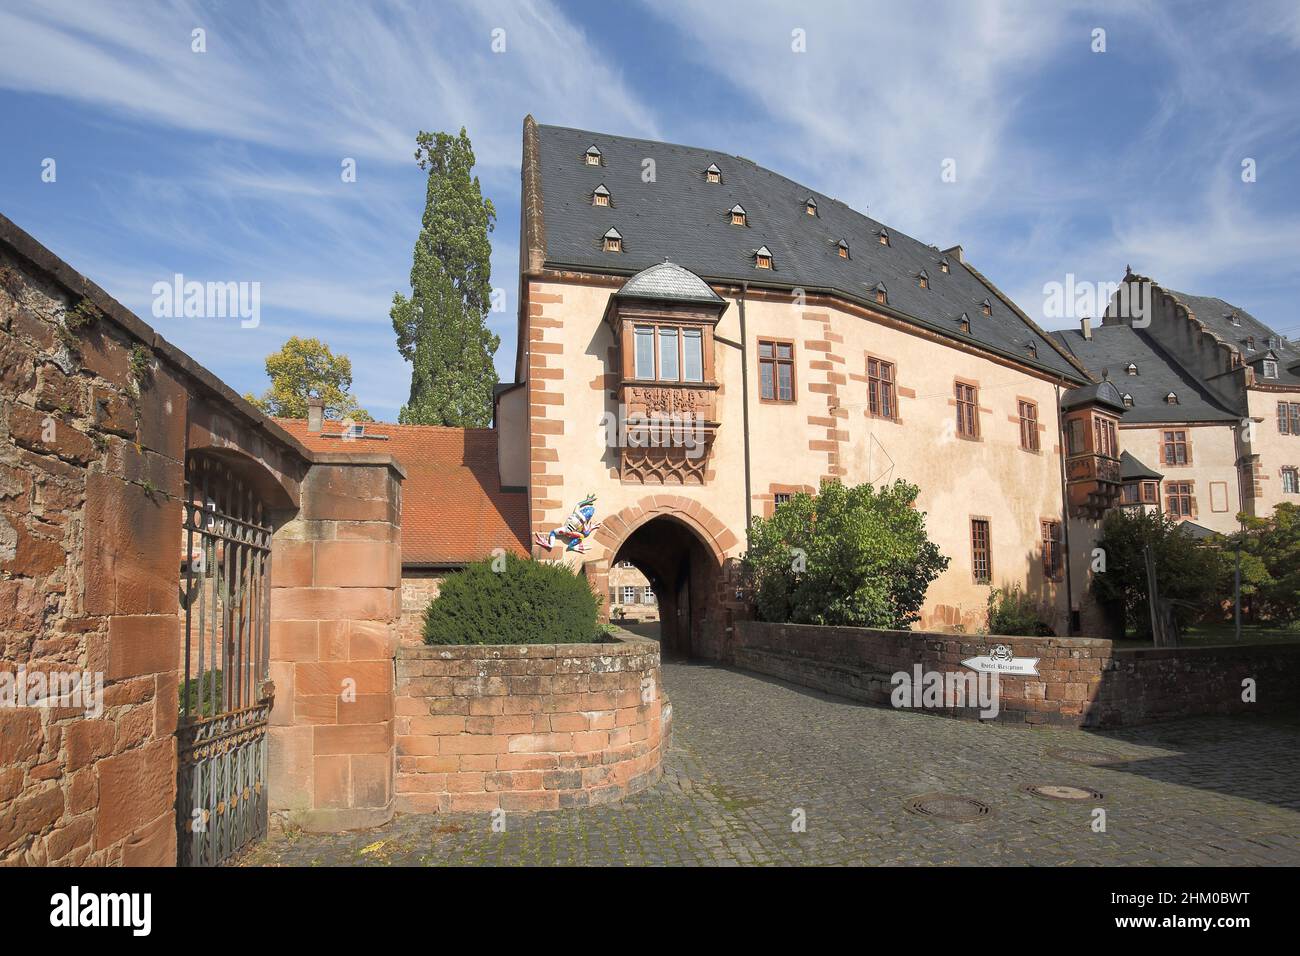 Entrée au château, Büdingen, Hesse, Allemagne Banque D'Images